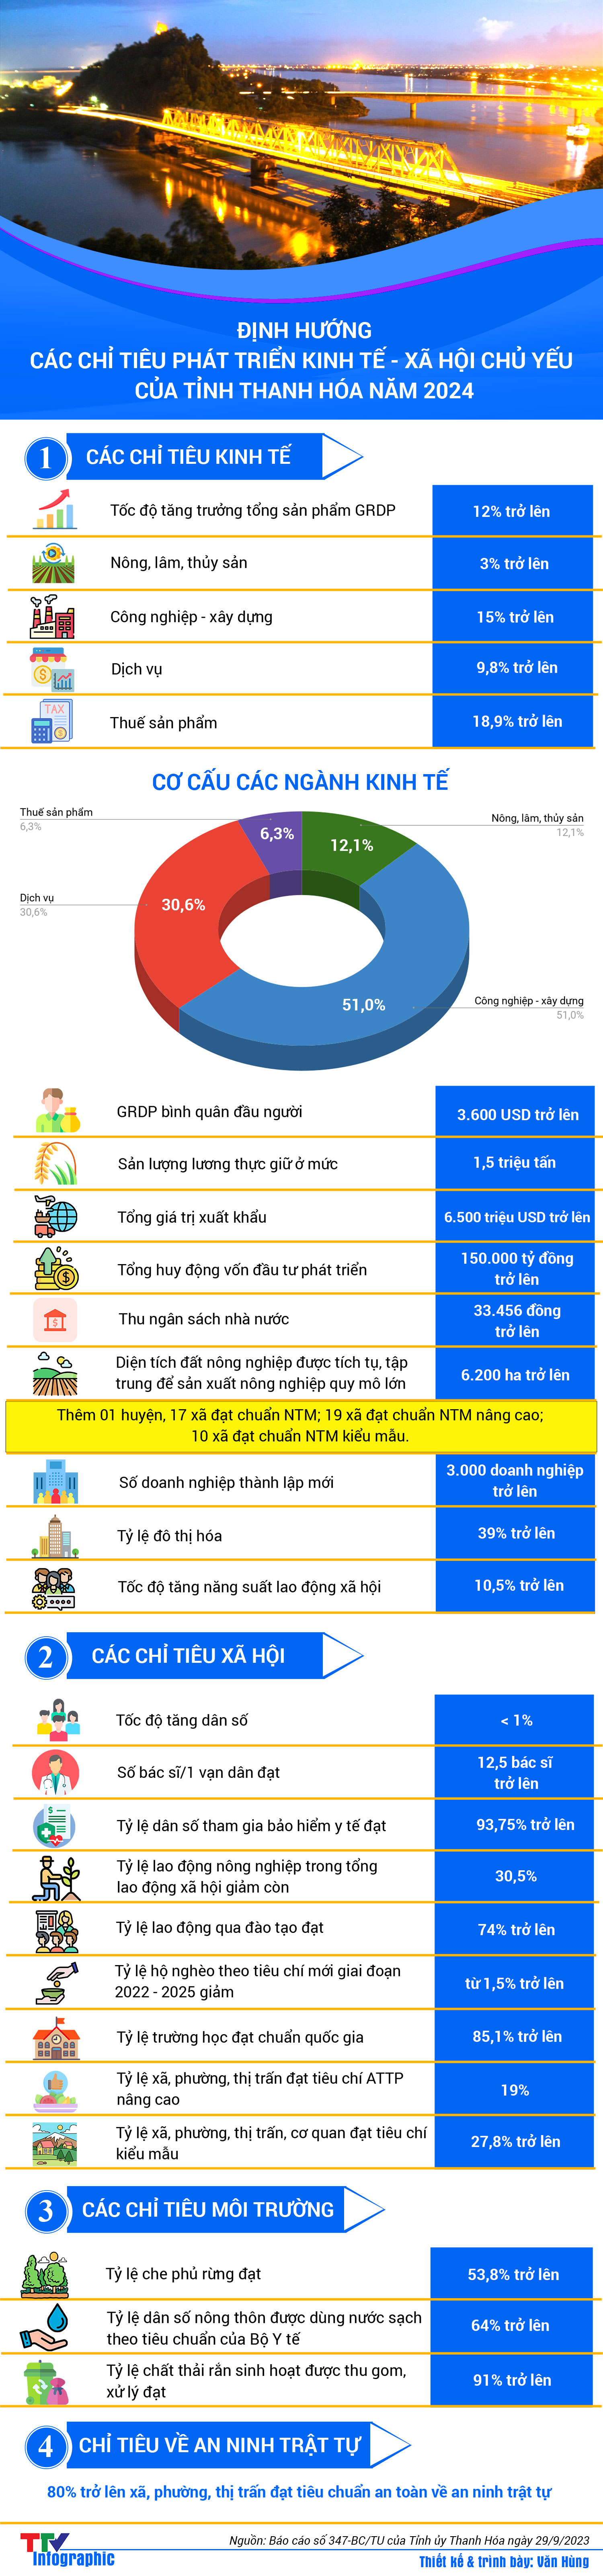 Infographic | Định hướng các chỉ tiêu phát triển kinh tế - xã hội tỉnh Thanh Hóa năm 2024 - Ảnh 1.